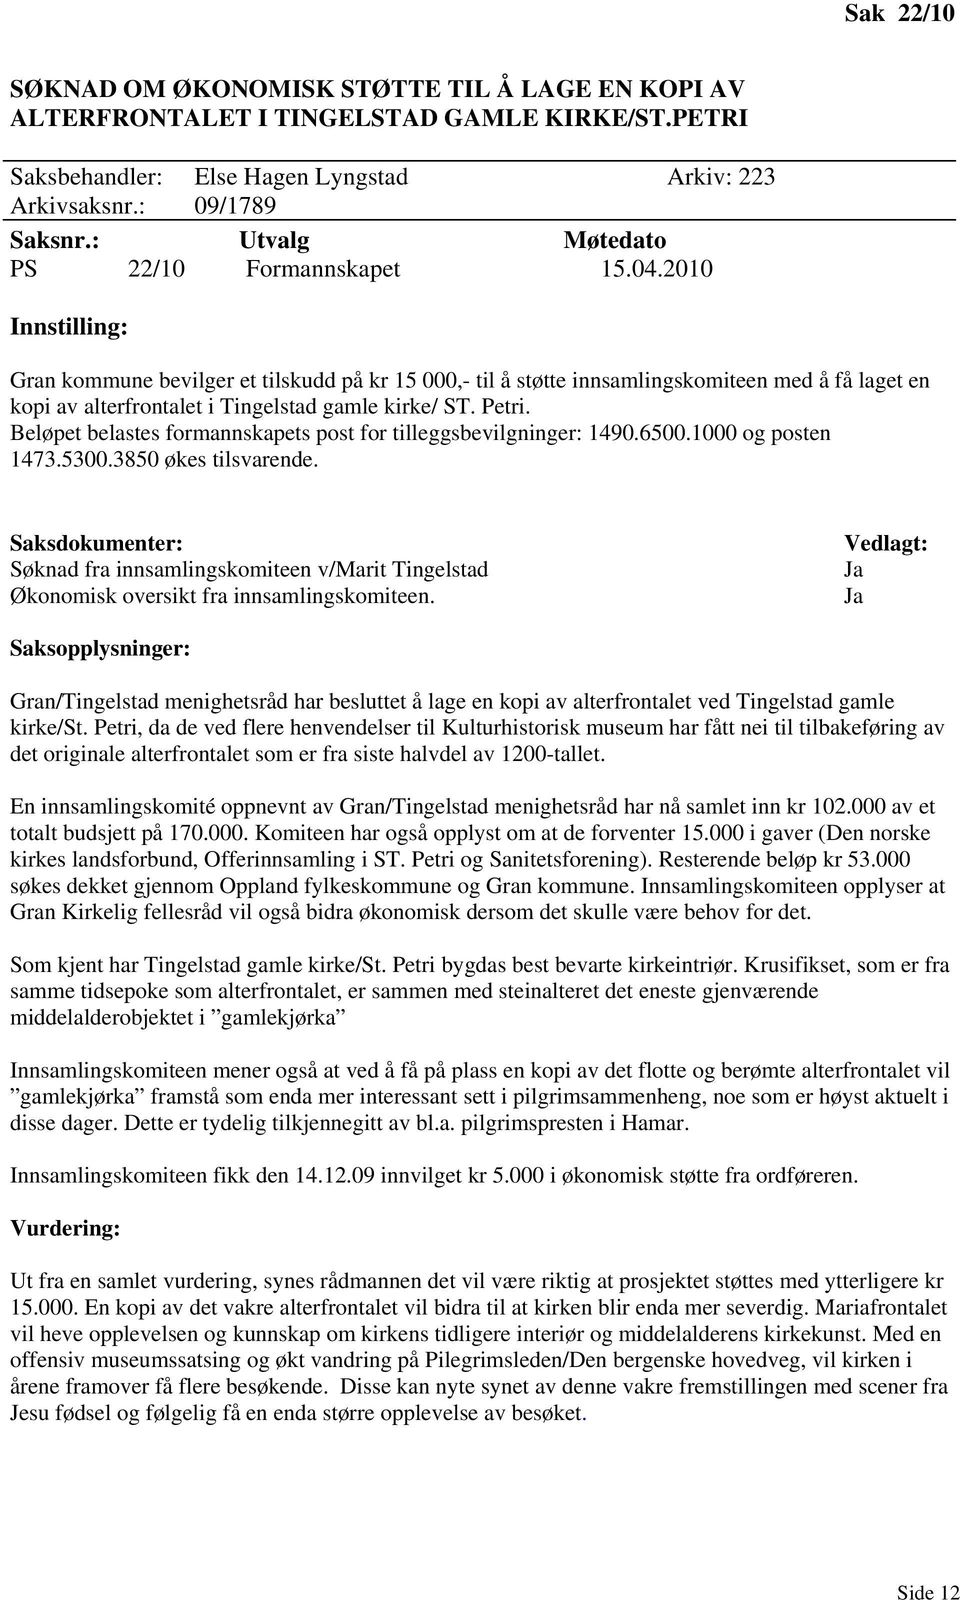 2010 Innstilling: Gran kommune bevilger et tilskudd på kr 15 000,- til å støtte innsamlingskomiteen med å få laget en kopi av alterfrontalet i Tingelstad gamle kirke/ ST. Petri.